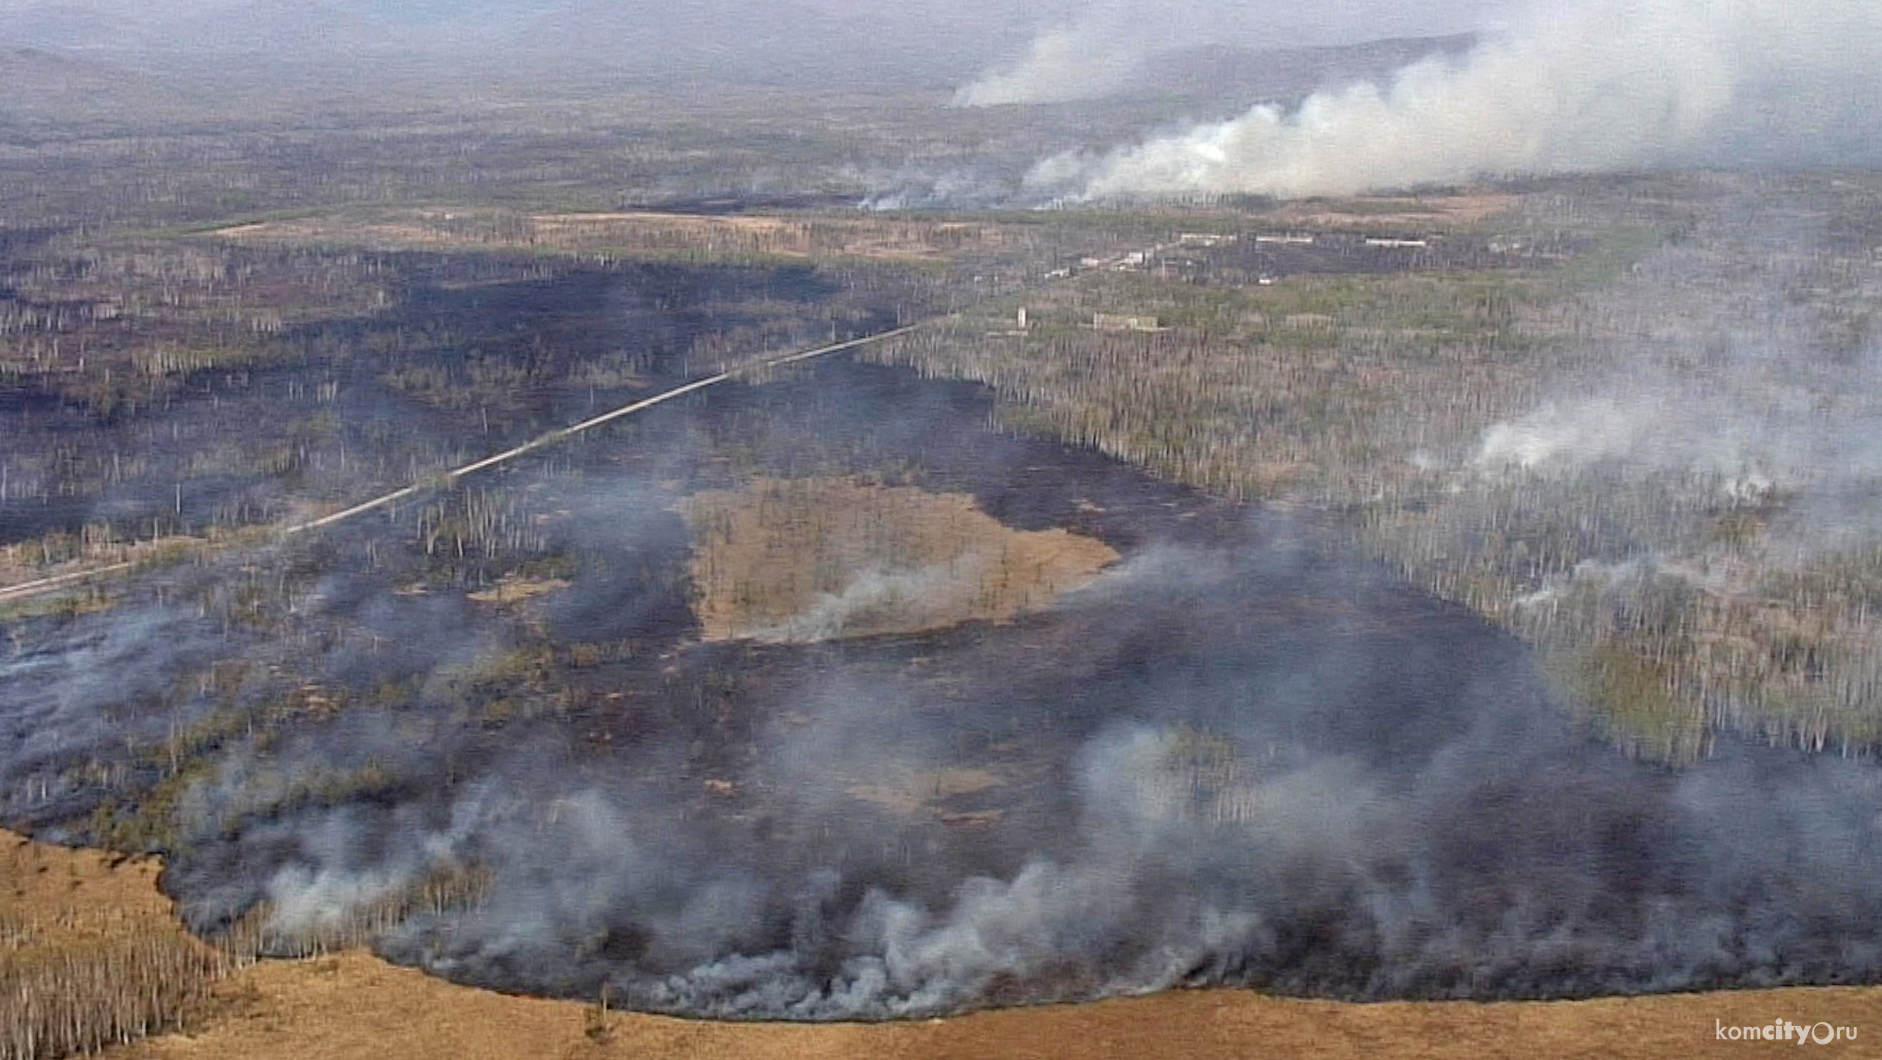 Четыре лесных пожара действуют на территории Хабаровского края